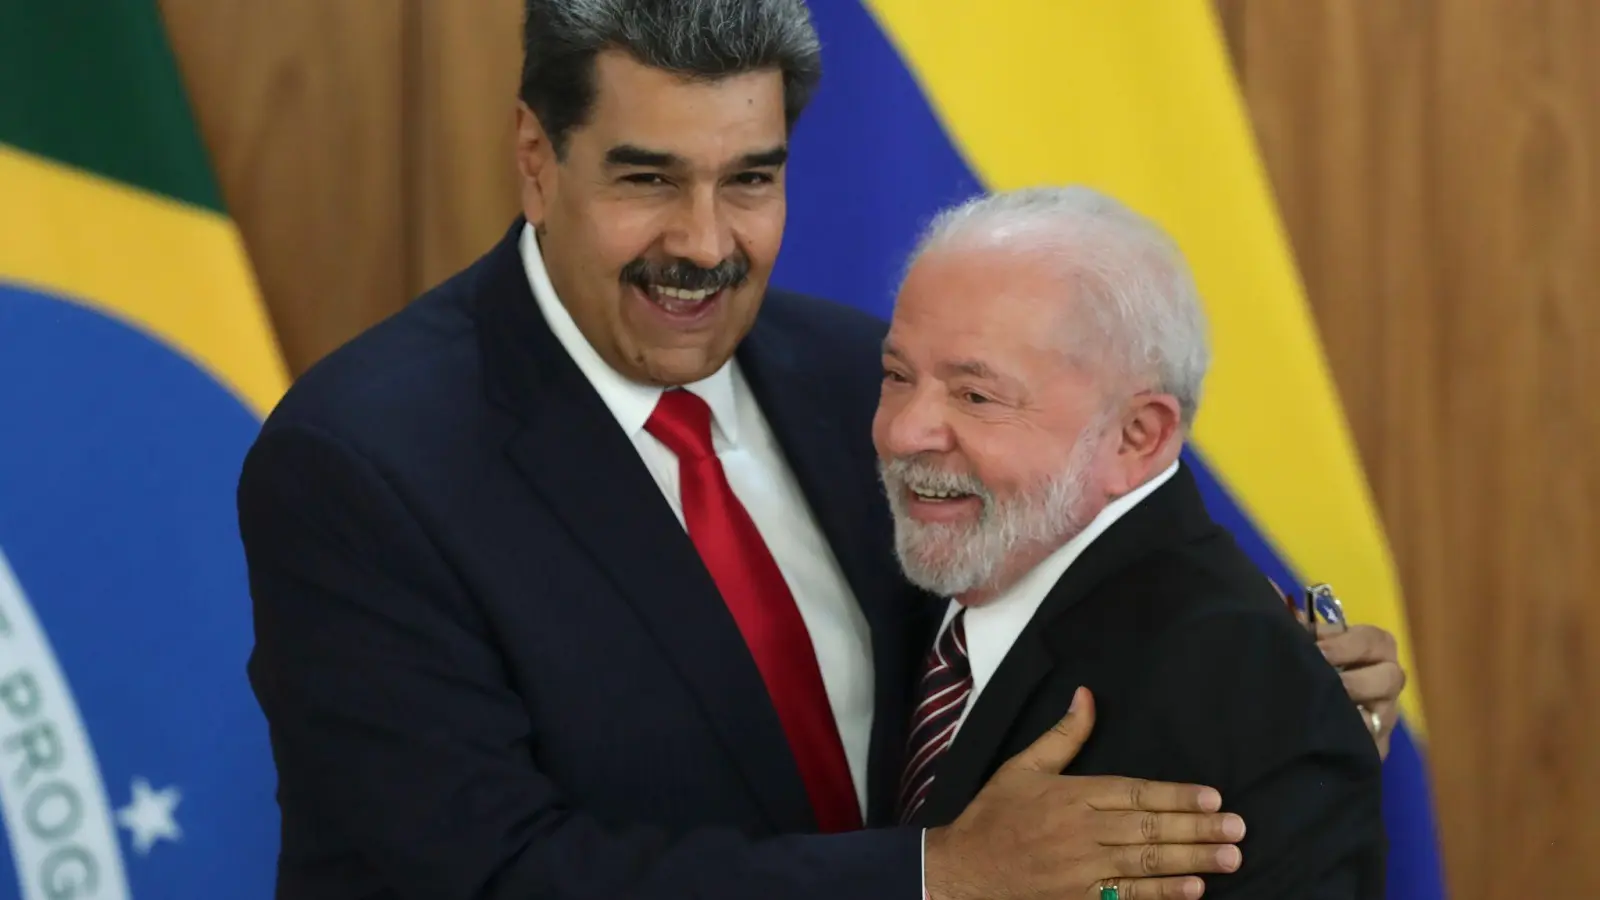 Nicolas Maduro (l), Präsident von Venezuela, umarmt Brasiliens Präsidenten Luiz Inacio Lula da Silva (r) nach einer gemeinsamen Pressekonferenz. (Foto: Gustavo Moreno/AP)